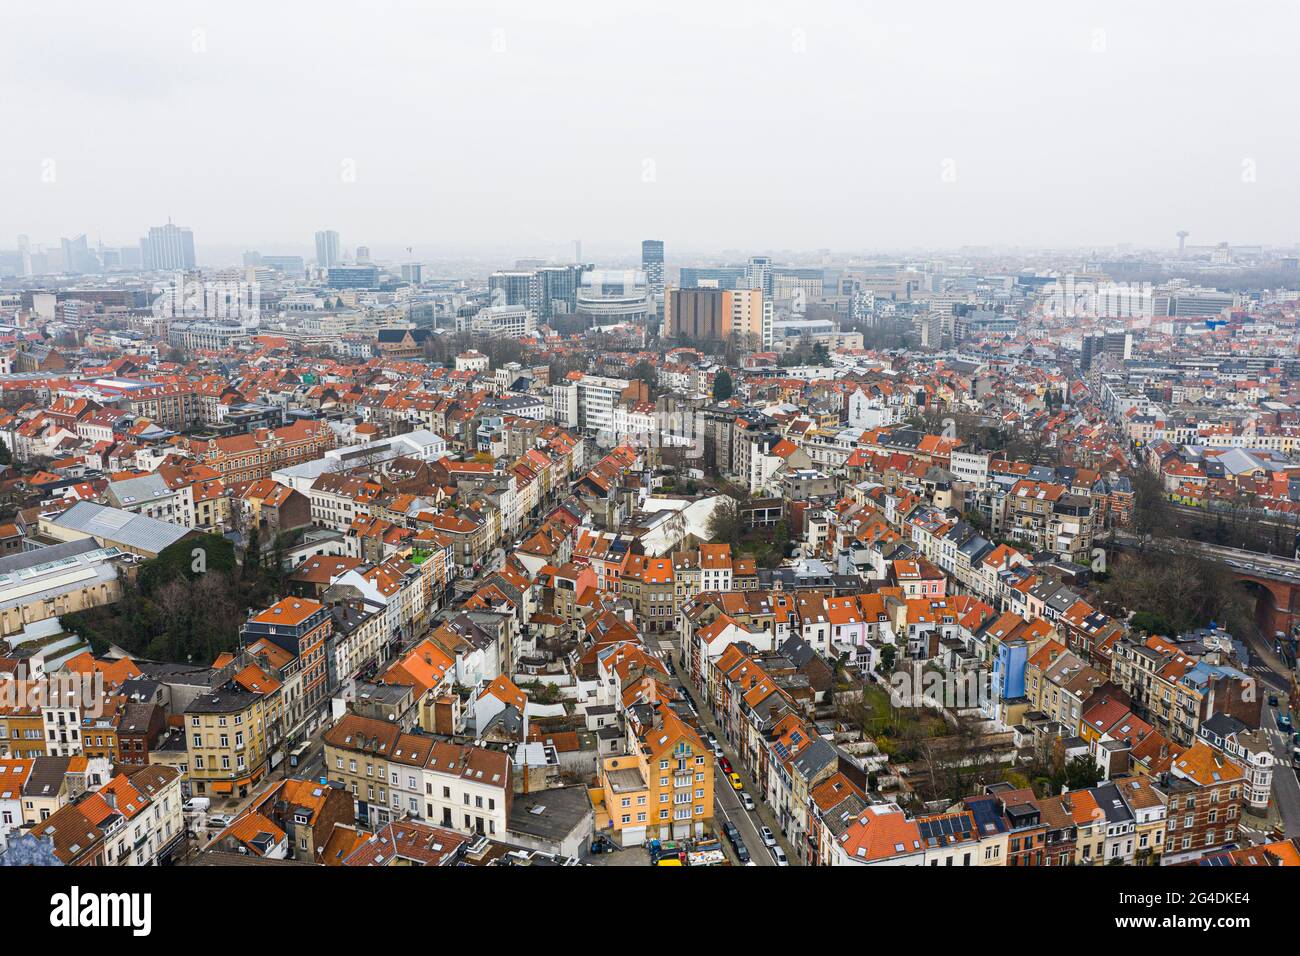 Brüssel, Belgien, 3. Januar 2021: Blick von oben auf die Altstadt von Brüssel. Europäische kommission baut auf dem Hintergrund auf Stockfoto